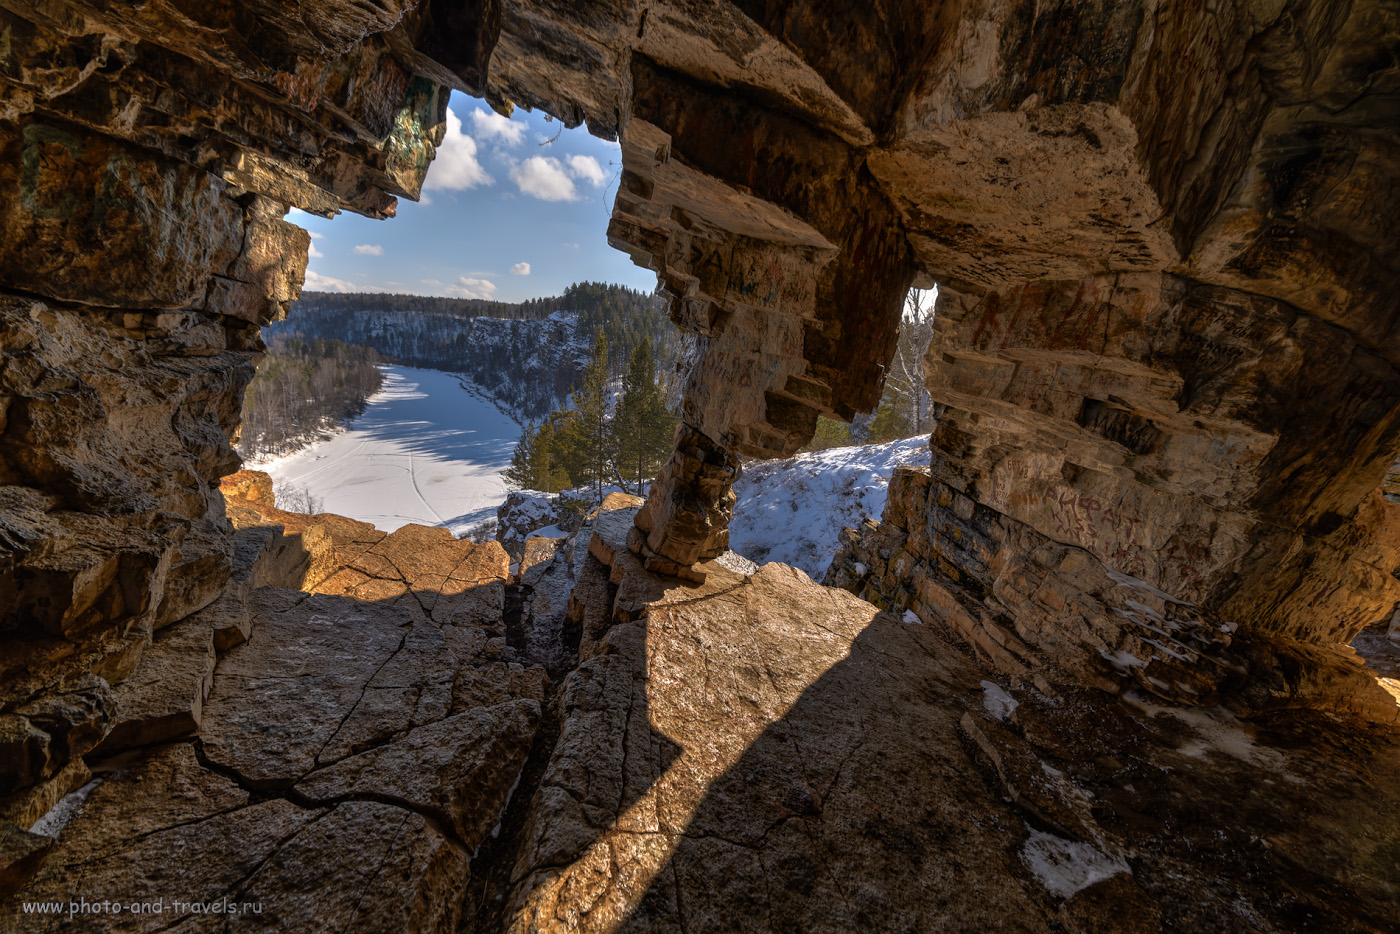 Фото 37. Виды из грота Идрисовской пещеры вверх по течению реки Юрюзань. Камера Nikon D610, объектив Samyang 14 mm f/2.8. HDR из трех кадров. 1/250, -0.67, 9.0, 160, 14.